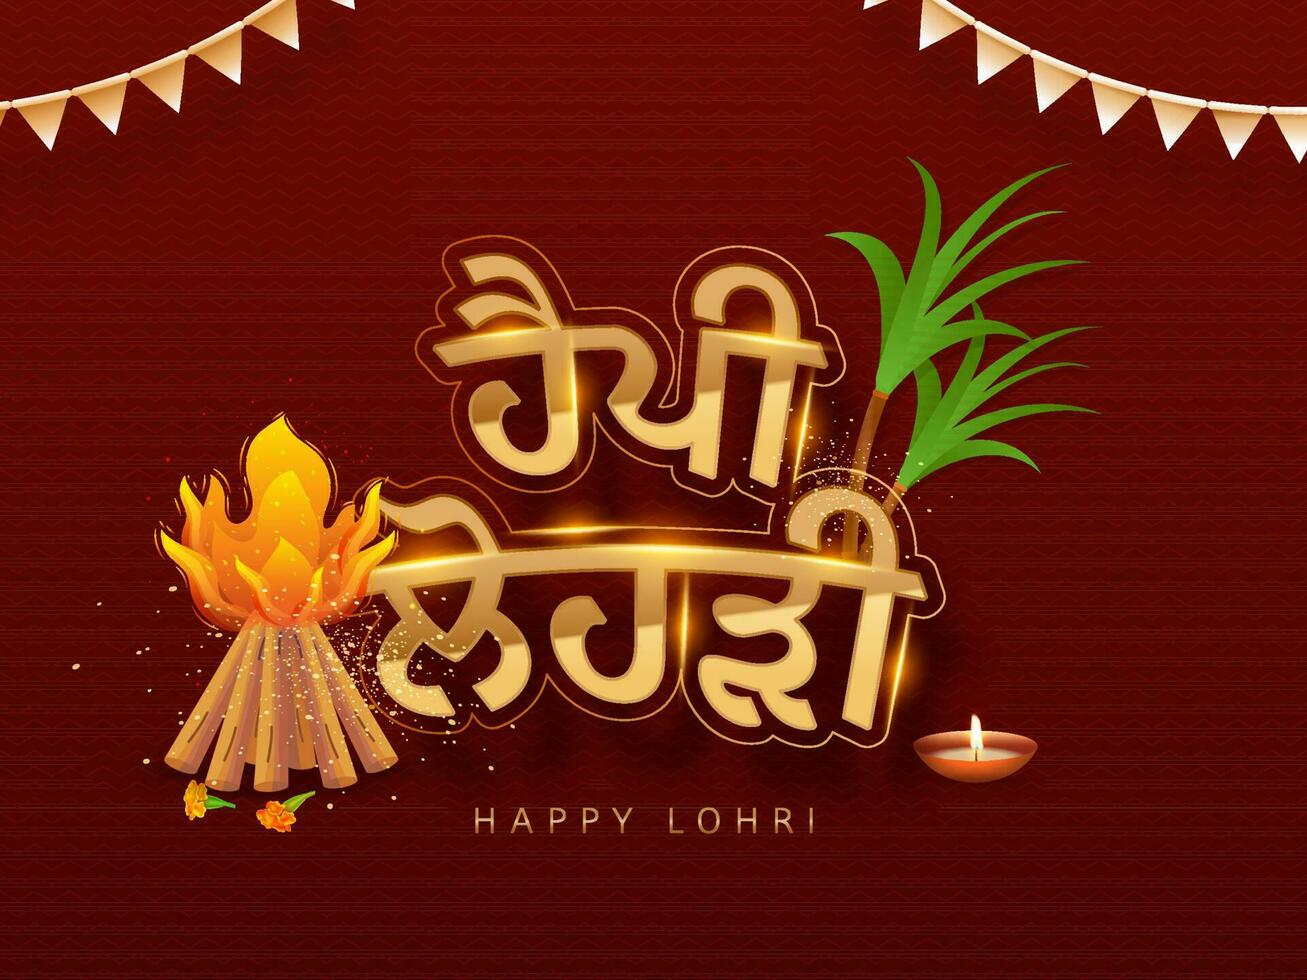 Aufkleber Stil golden glücklich lohri Punjabi Text mit Lagerfeuer, Zuckerrohr, zündete Öl Lampe und Ammer Flaggen dekoriert auf dunkel rot Hintergrund. vektor